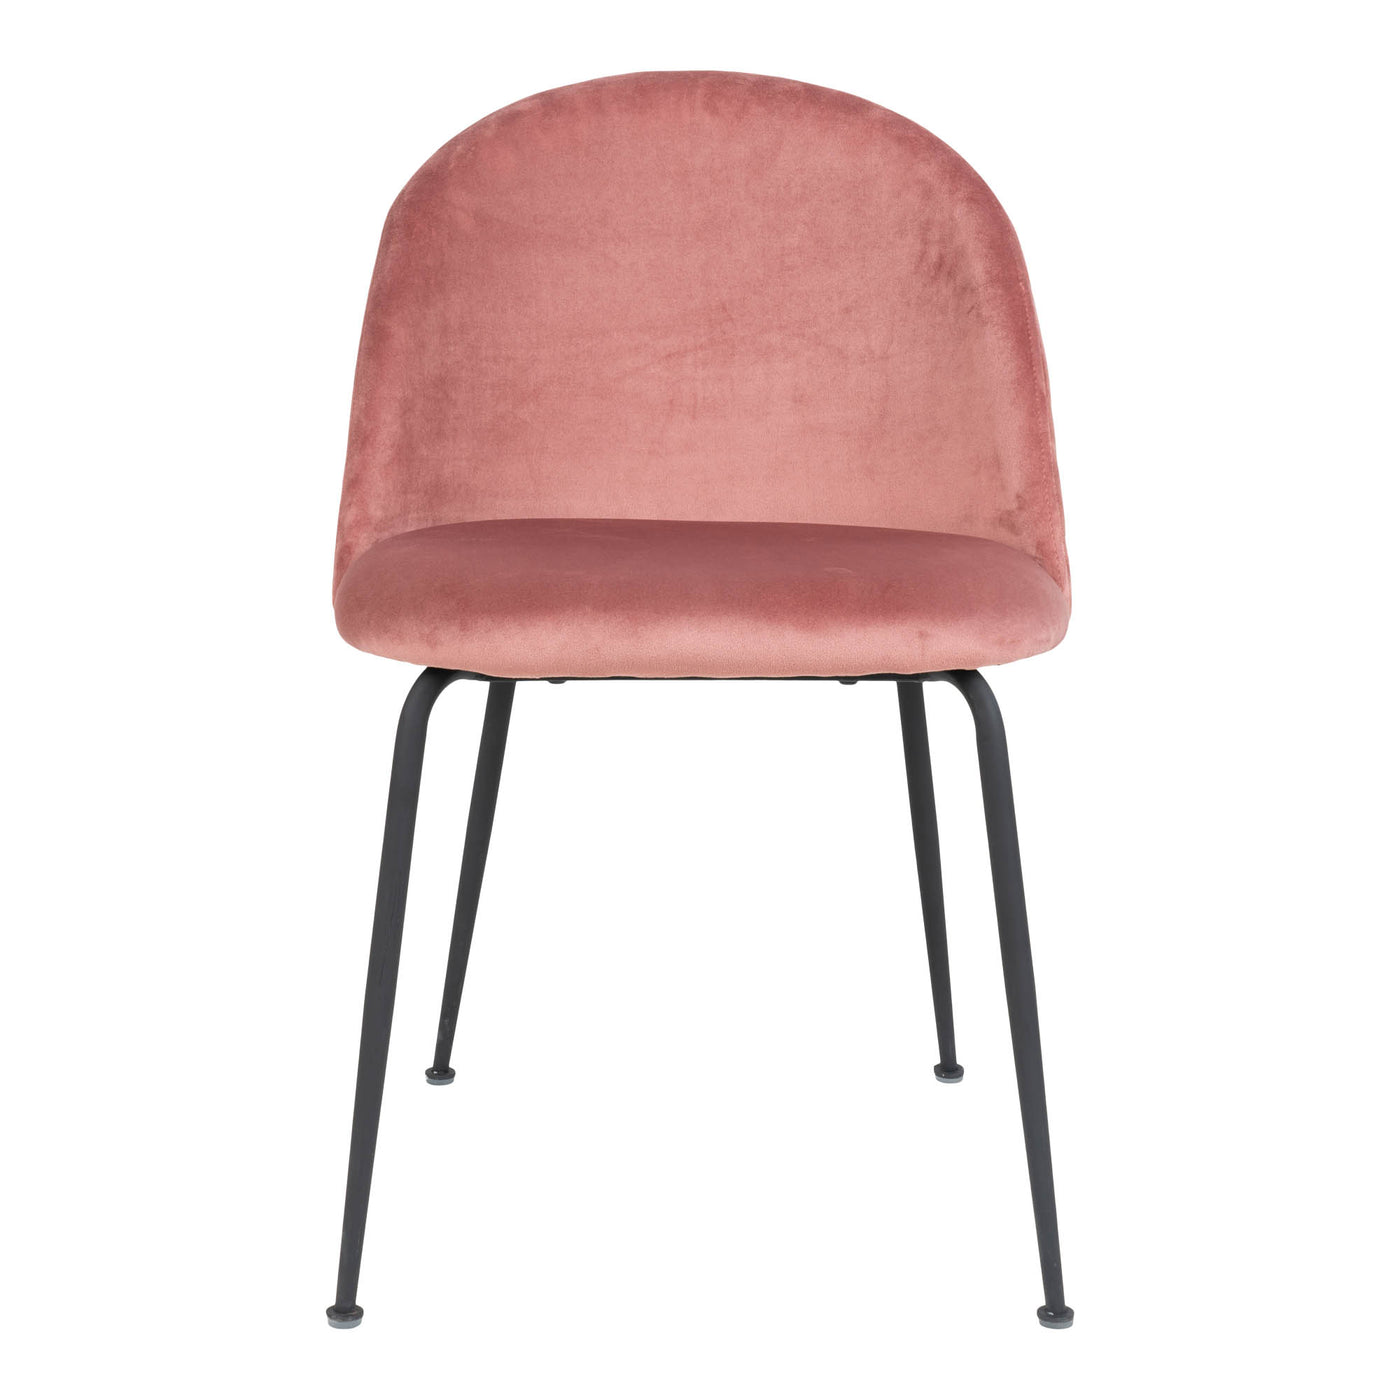 Geneve tuoli, roosa sametti - Mööpeli.com